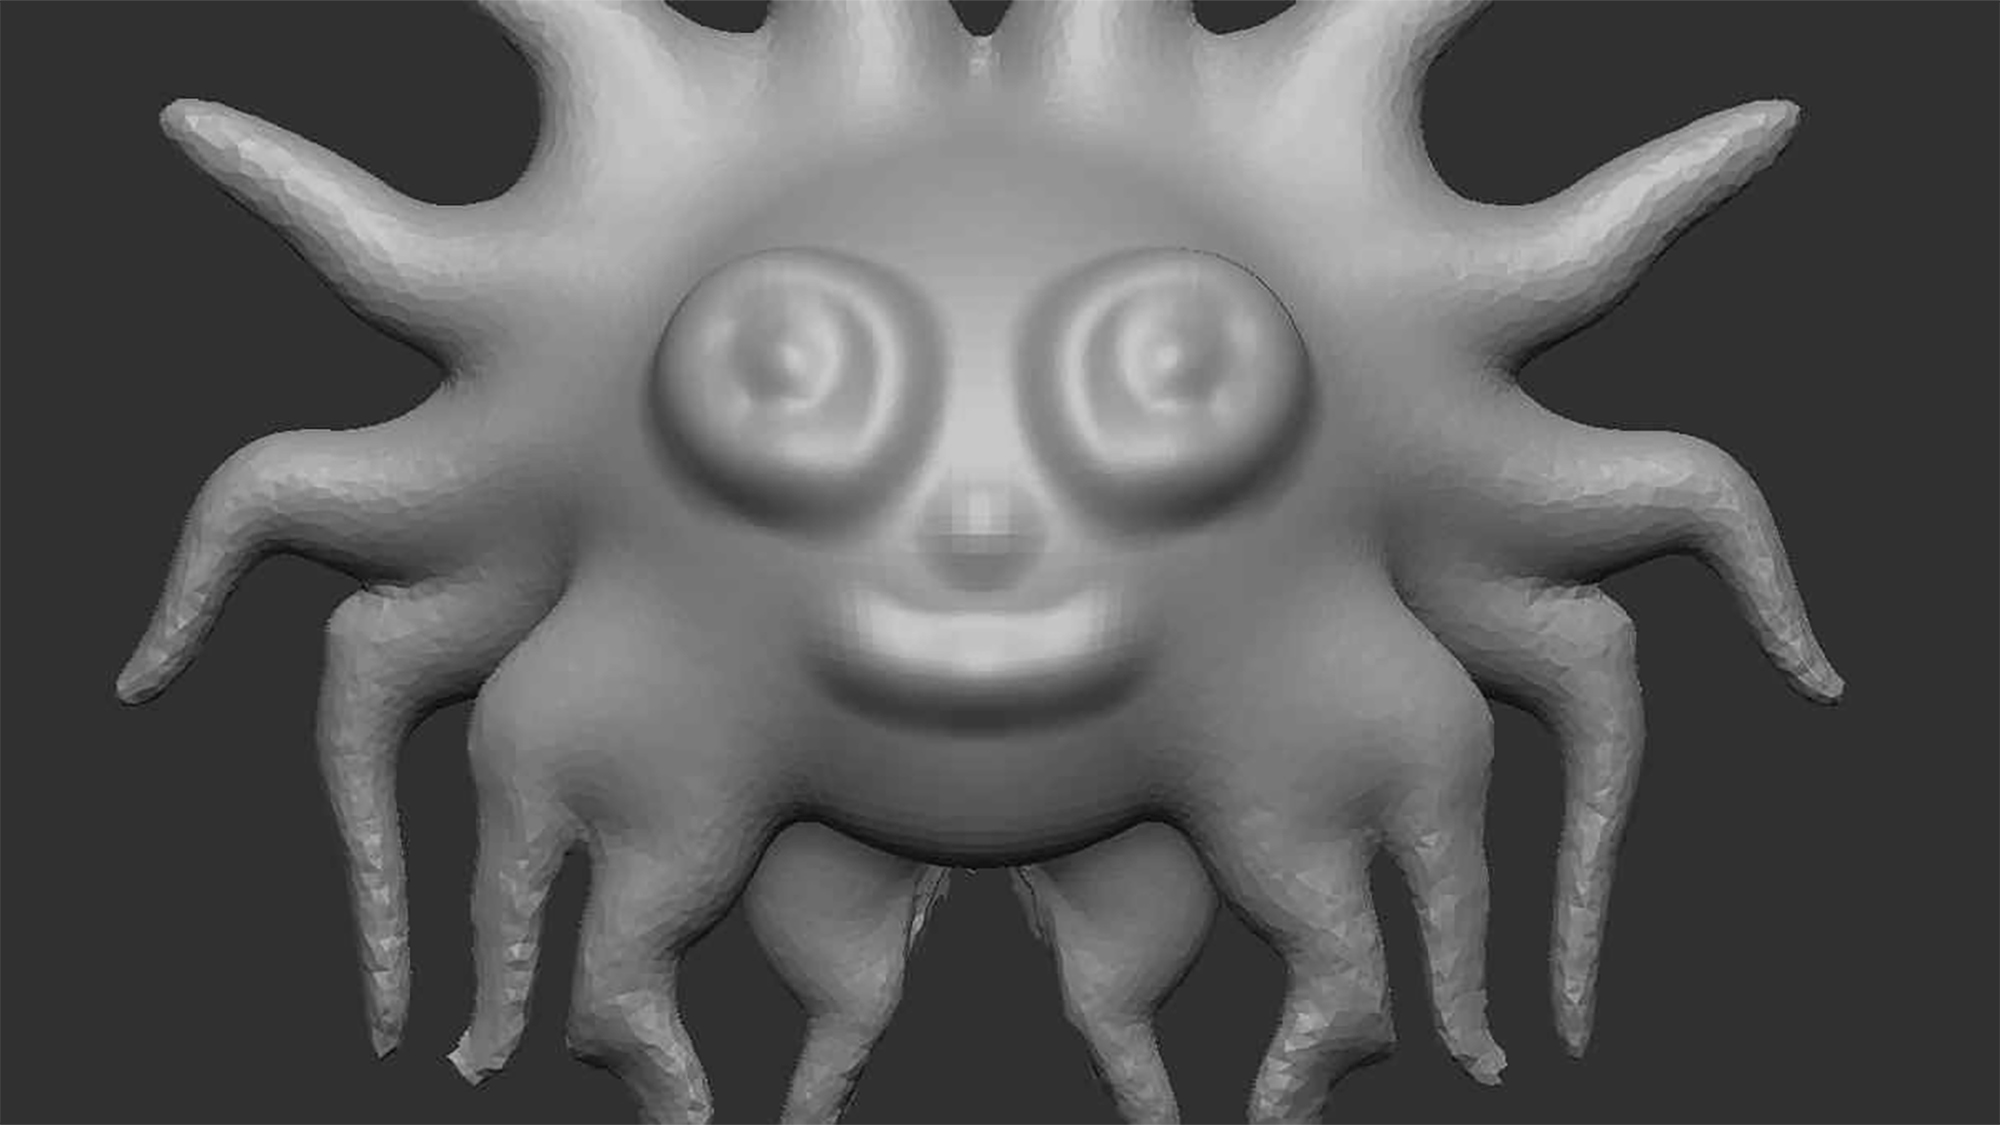 Een driedimensionale weergave van een fantasiewezen dat glimlacht. Dankzij de tentakels rond het vriendelijke gezicht lijkt deze op een afbeelding van de zon.